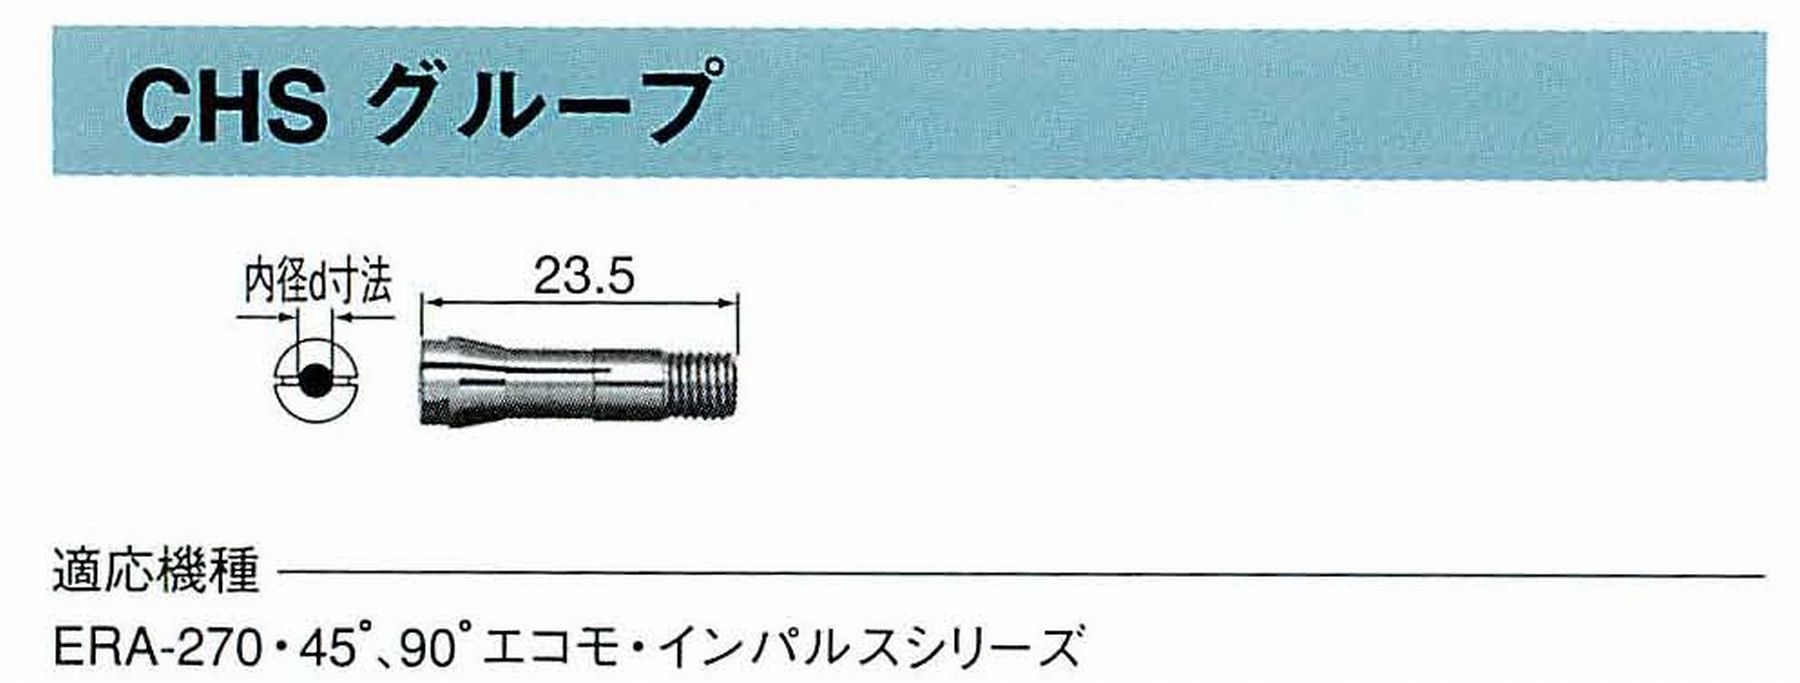 ナカニシ/NAKANISHI コレットチャック コード番号 90527 型式 CHS-2.7 内径:Φ2.7